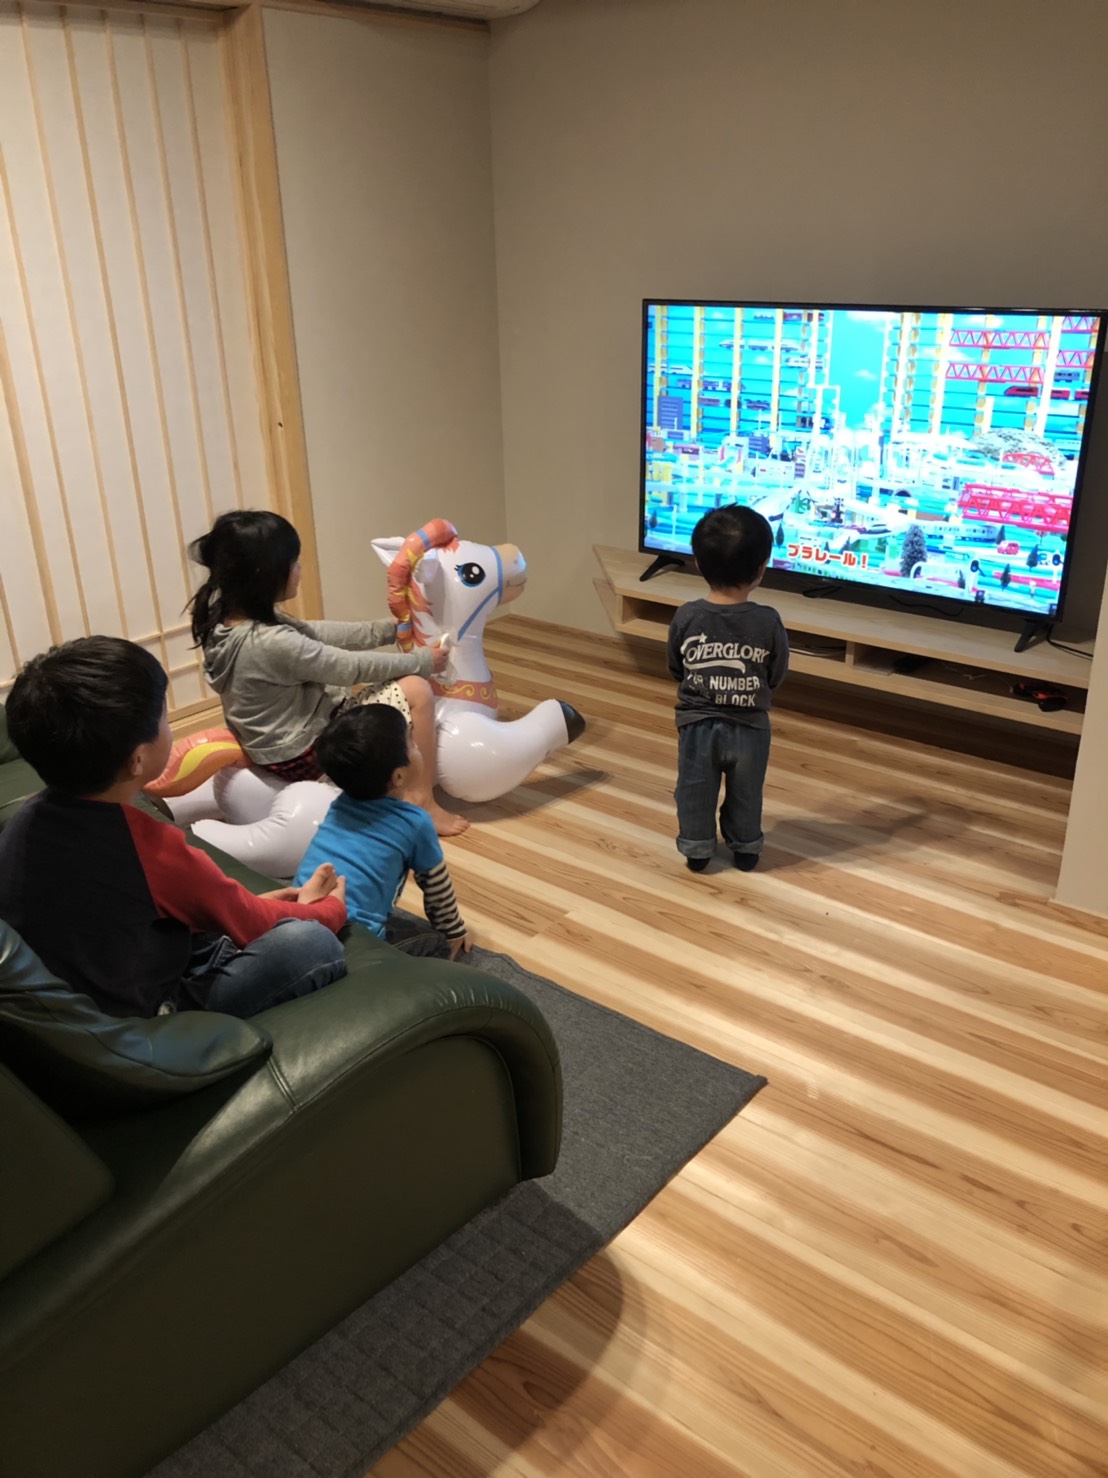 テレビを視聴する4人の子供たち